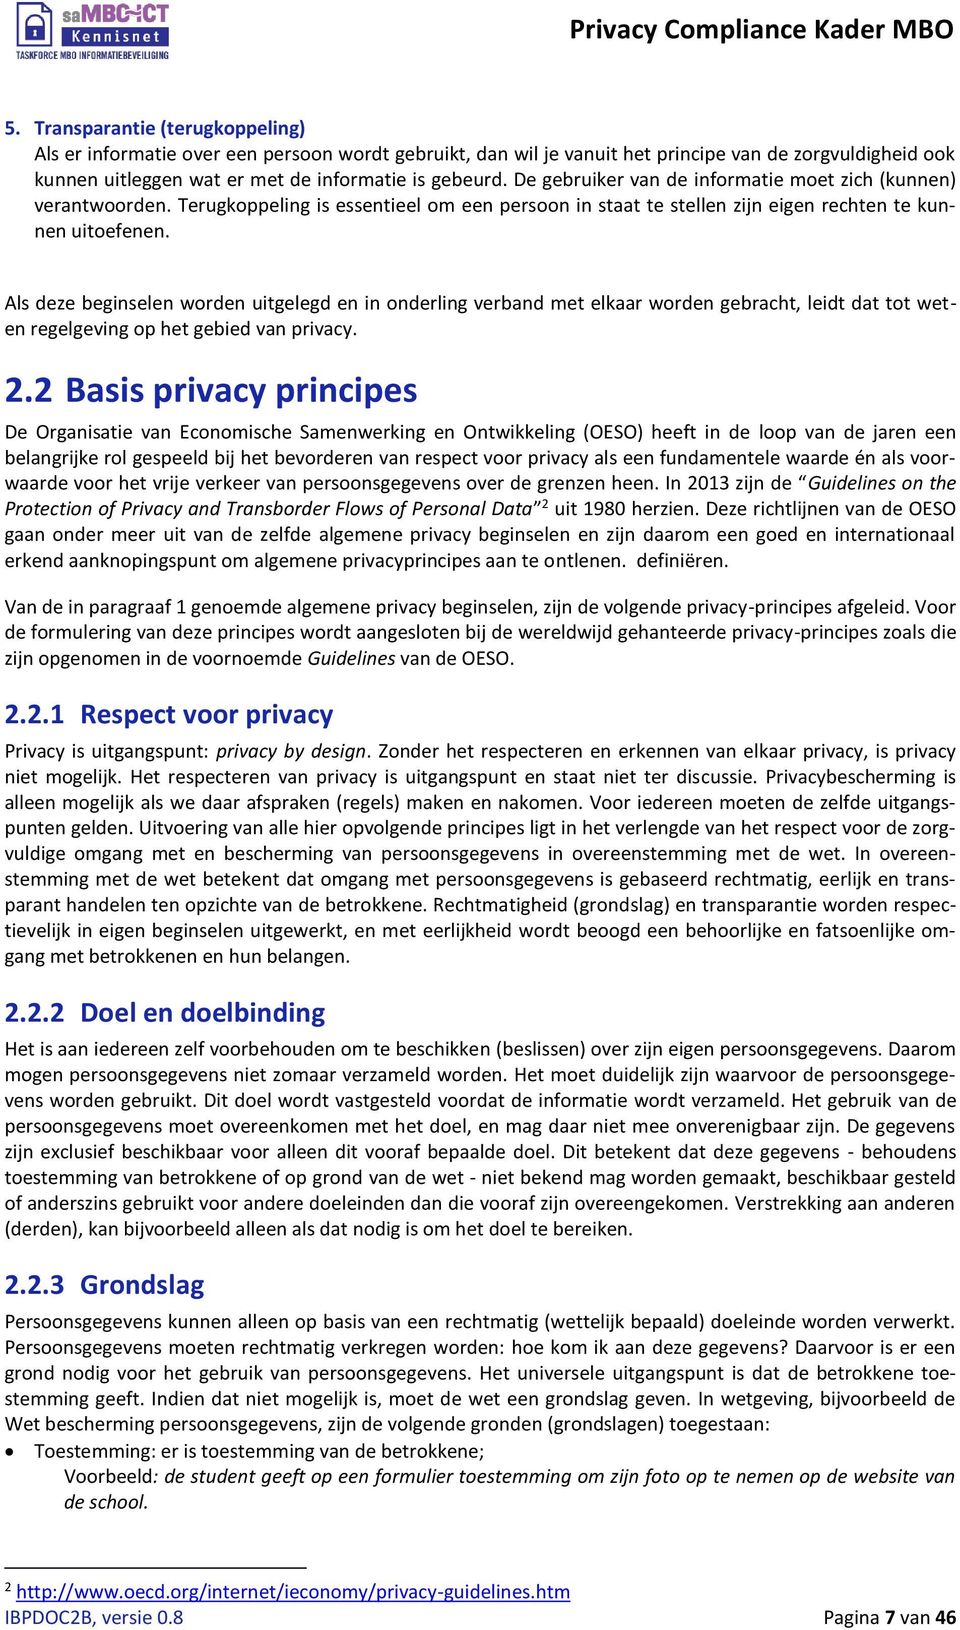 Als deze beginselen worden uitgelegd en in onderling verband met elkaar worden gebracht, leidt dat tot weten regelgeving op het gebied van privacy. 2.